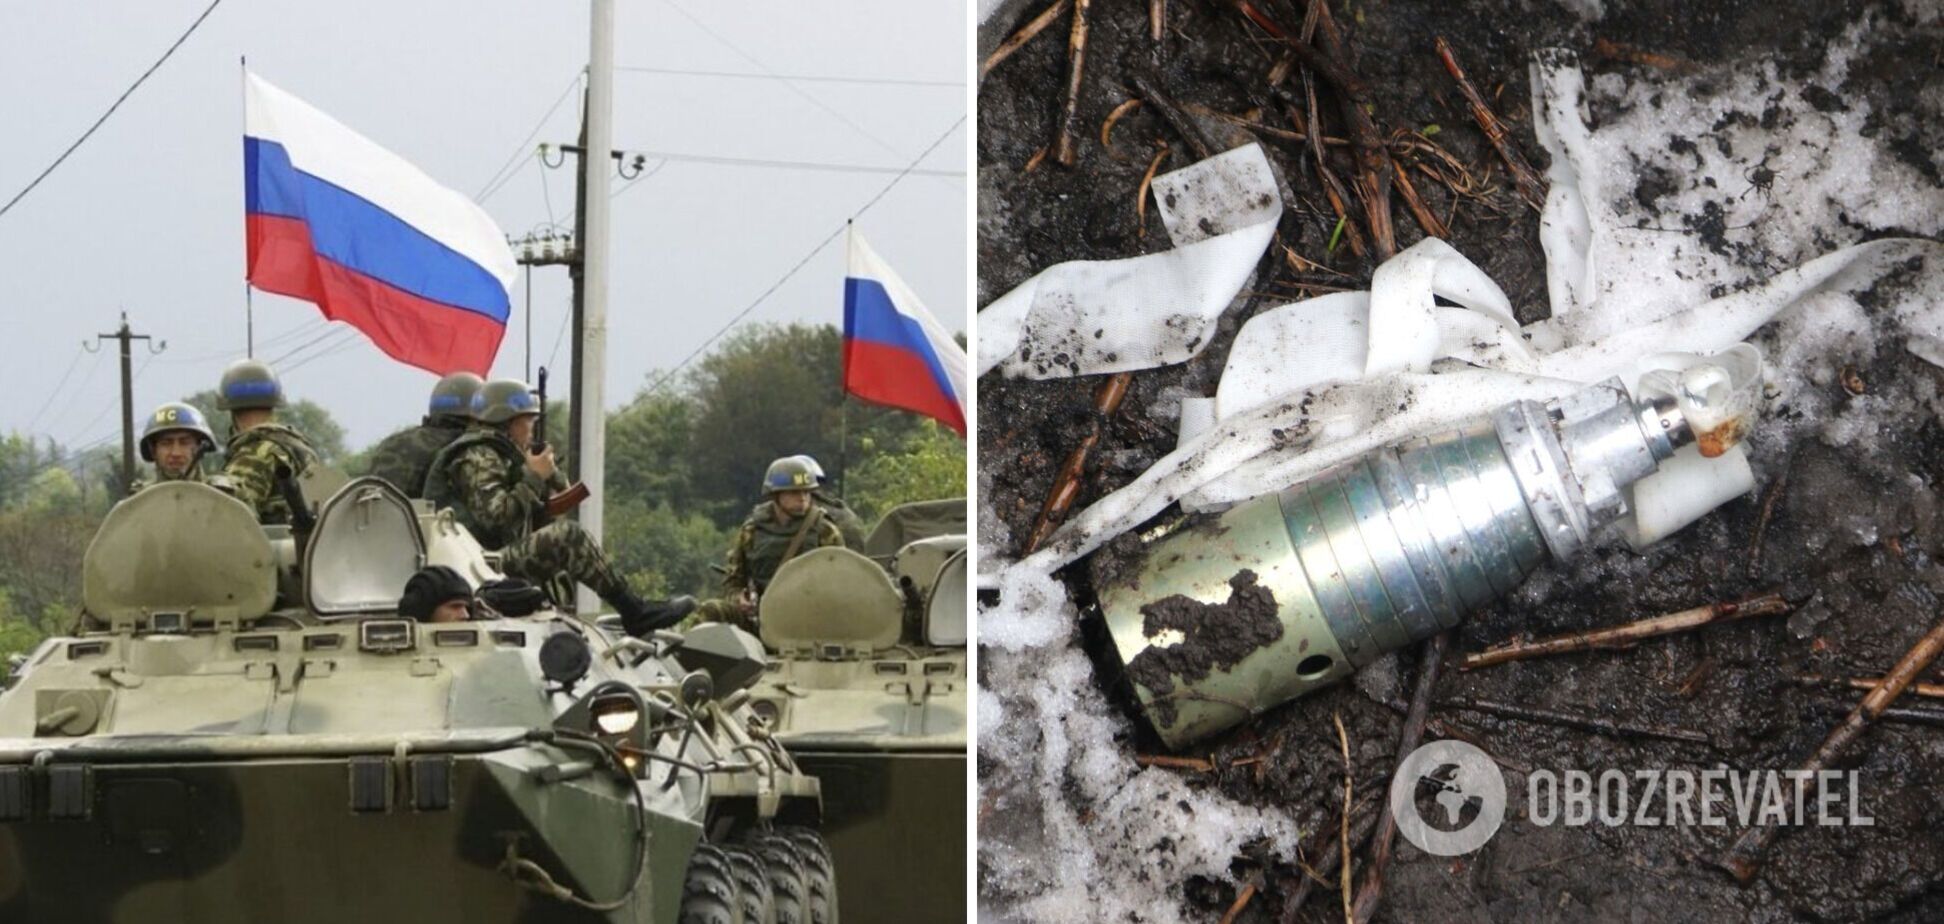 РФ использовала запрещенное оружие в войне против Украины